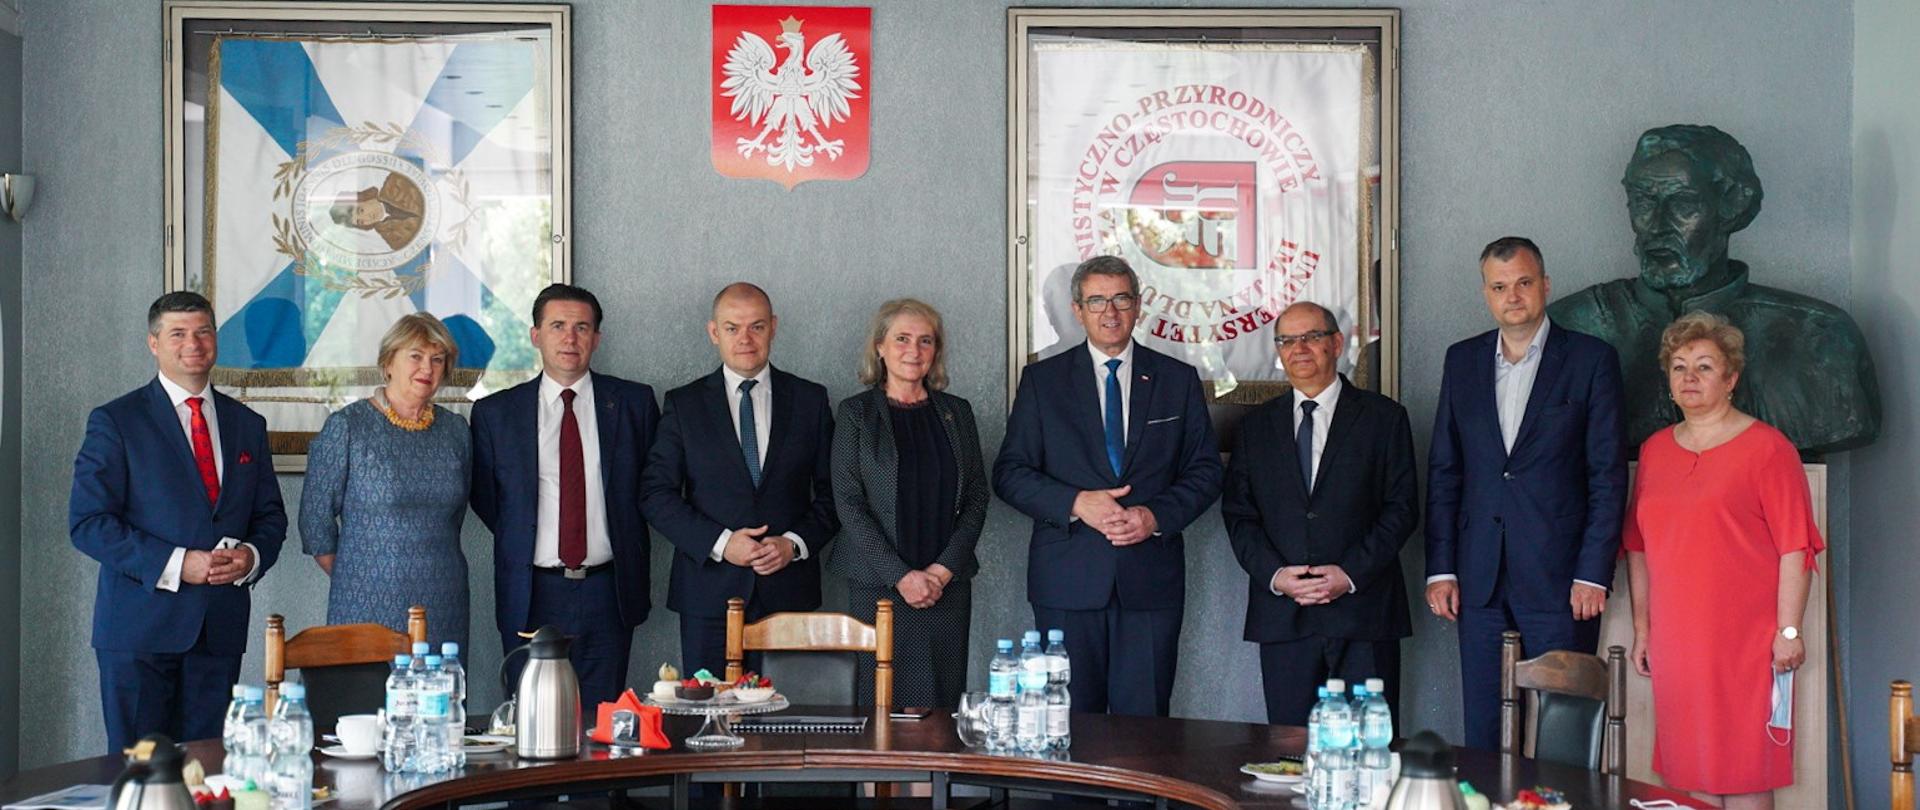 Minister i przedstawiciele UHP stoją za stołem, za nimi ściana z godłem Polski i sztandar uniwersytetu.